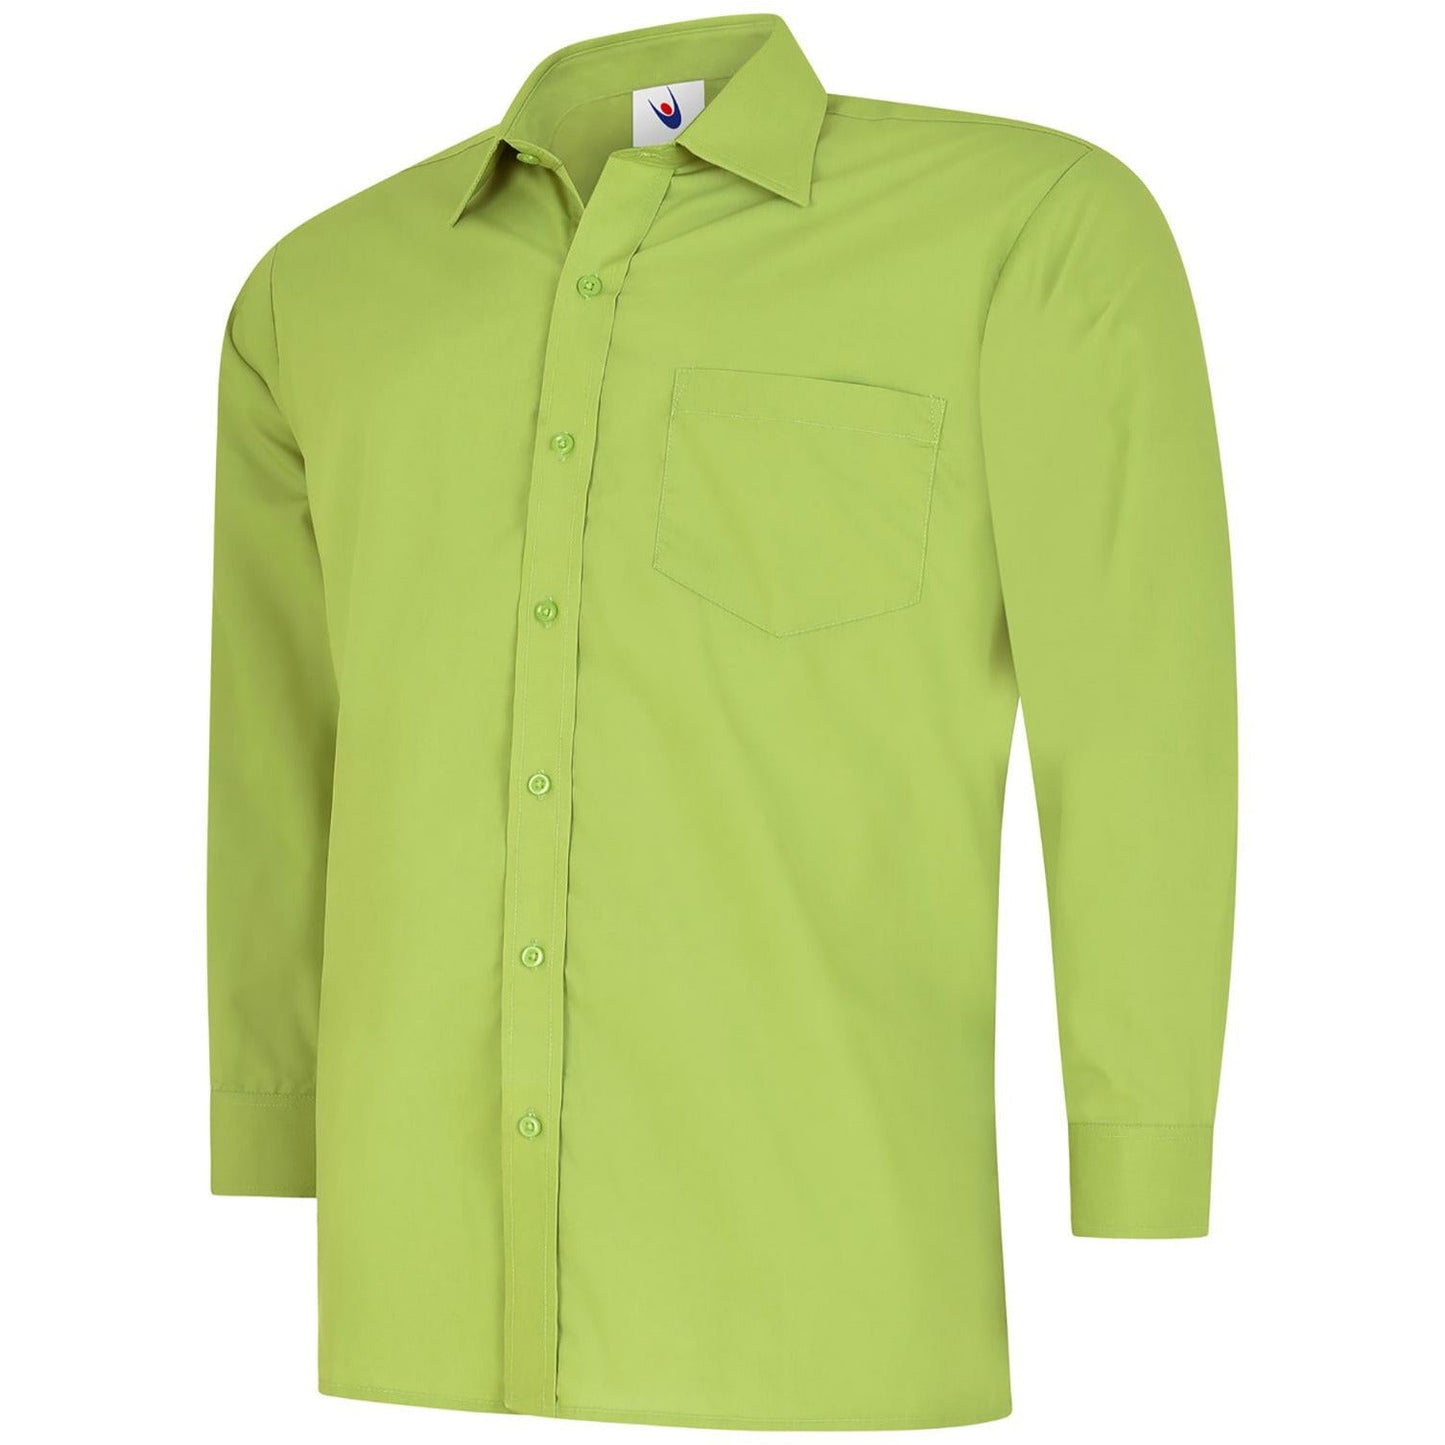 Mens Poplin Full Sleeve Shirt (14.5 - 16.5) - Lime